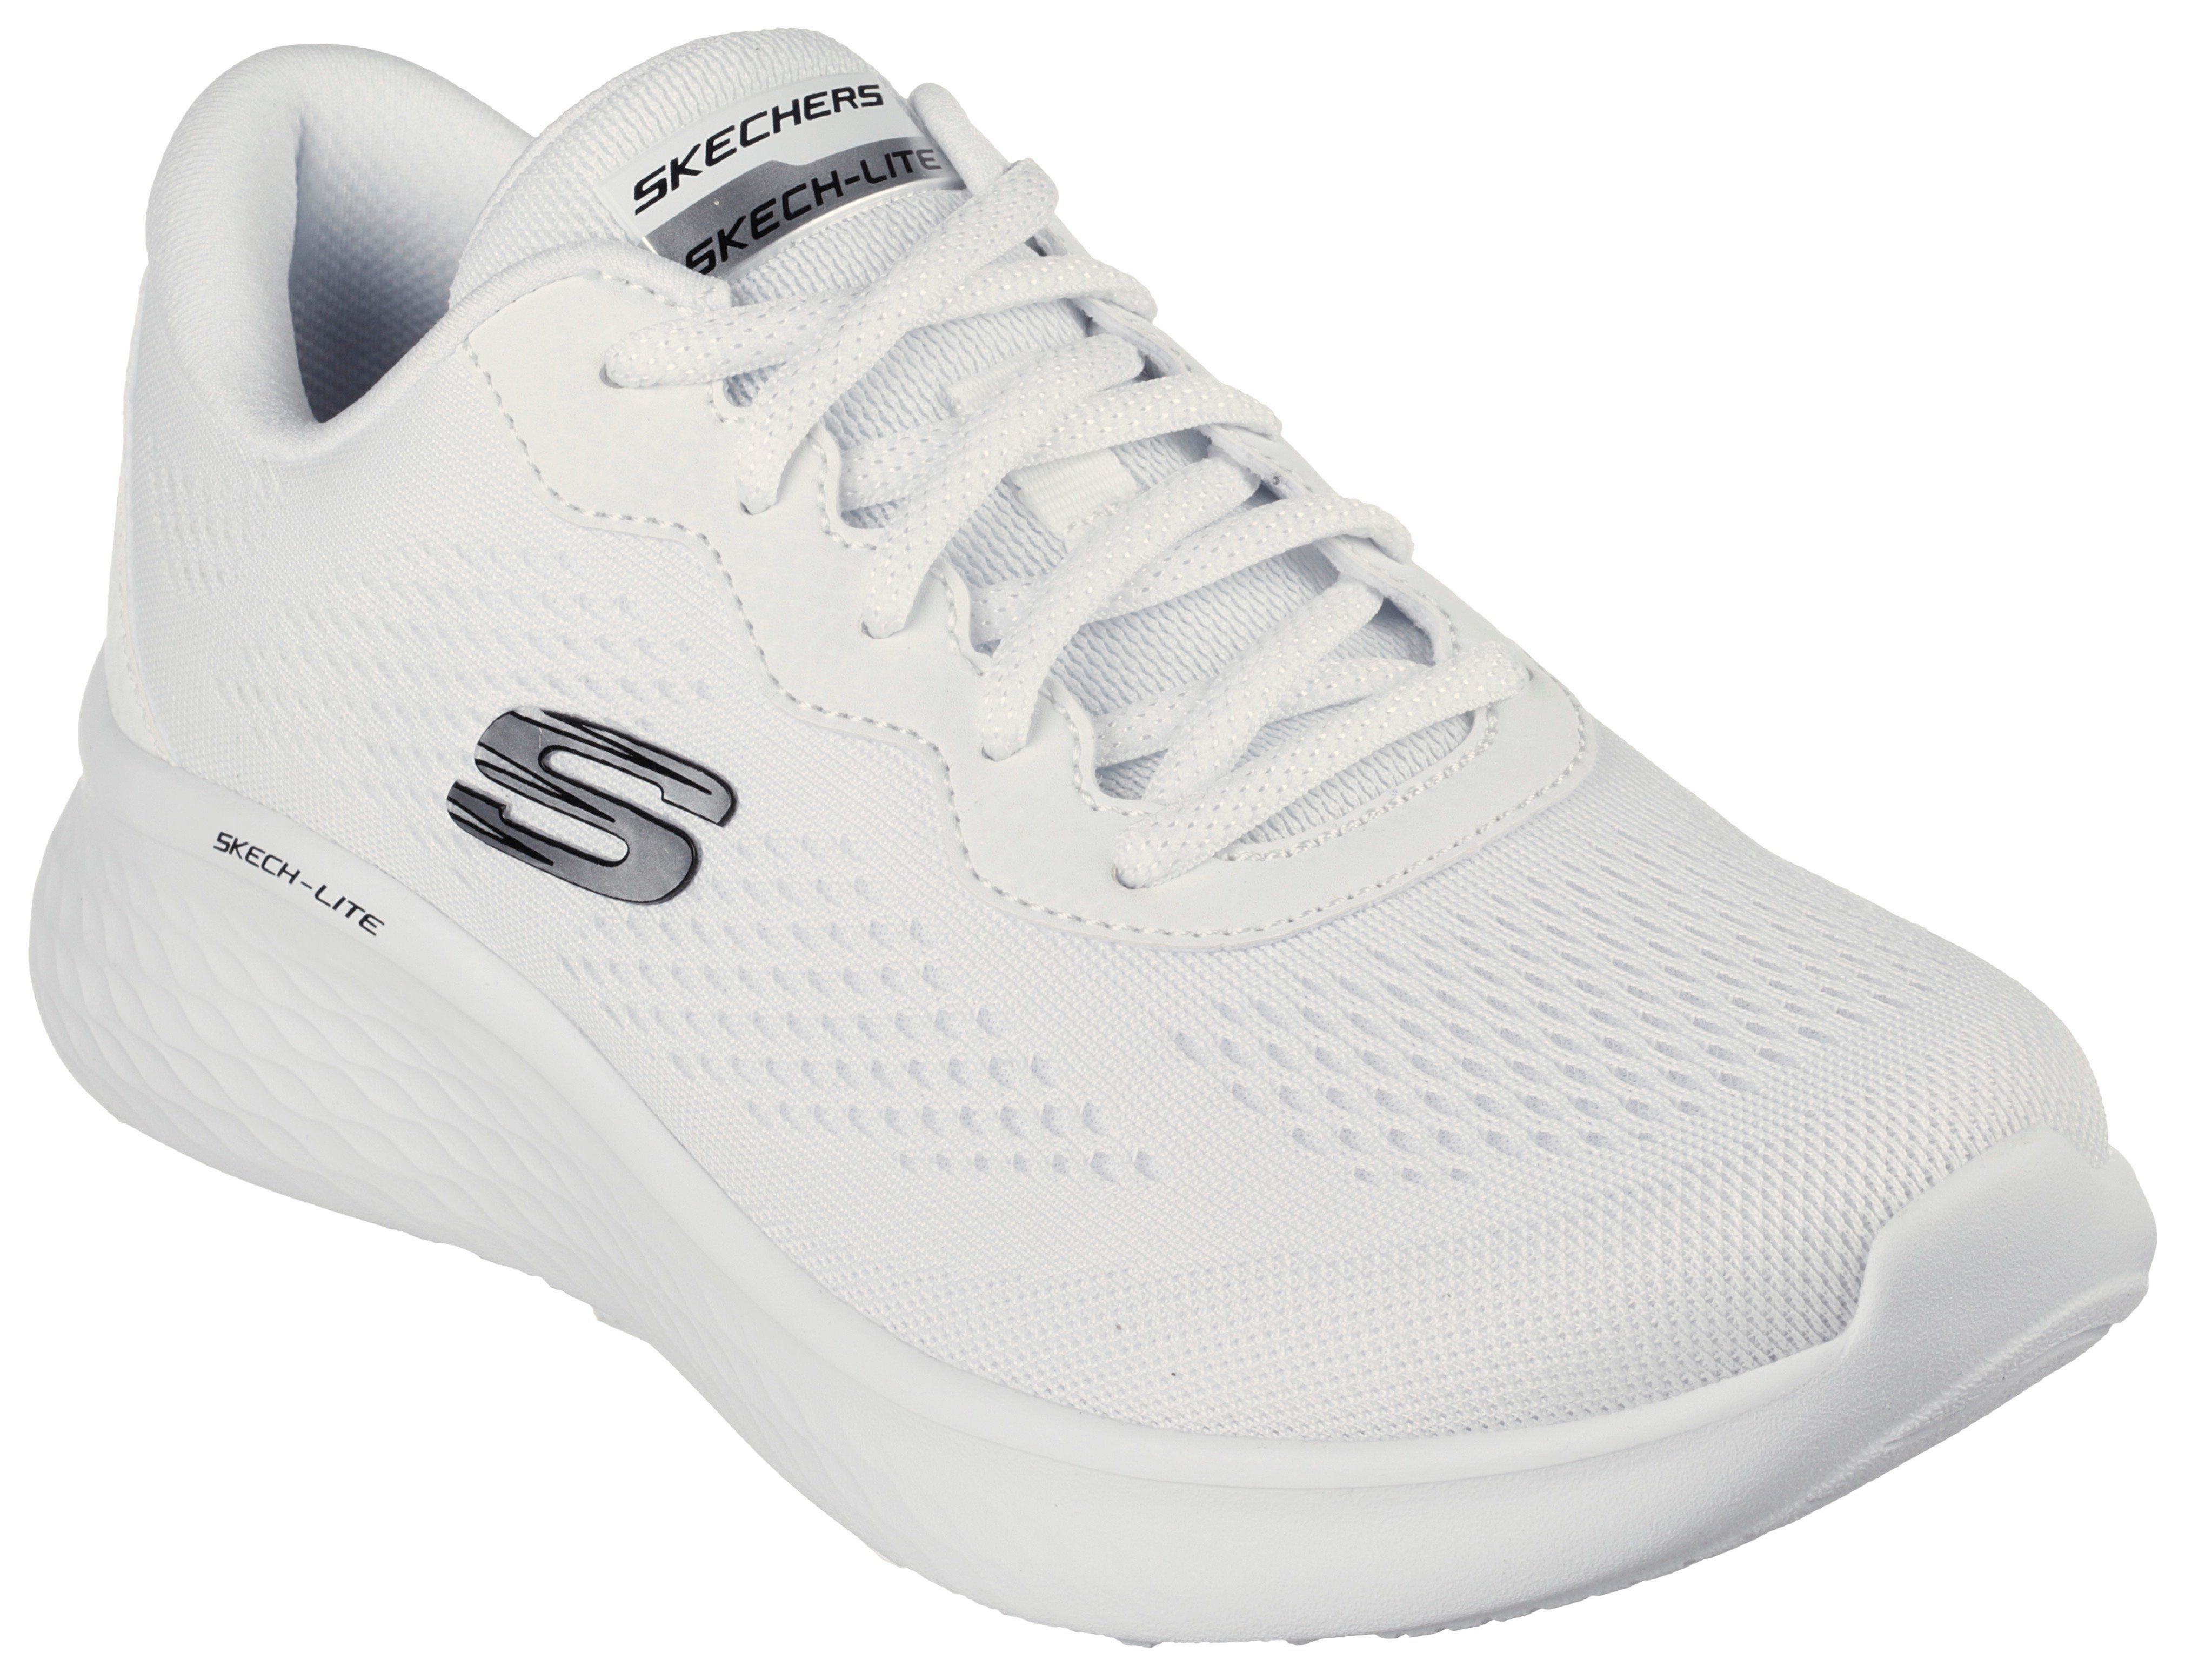 Skechers SKECH-LITE PRO - Sneaker für Maschinenwäsche geeignet weiß-pink